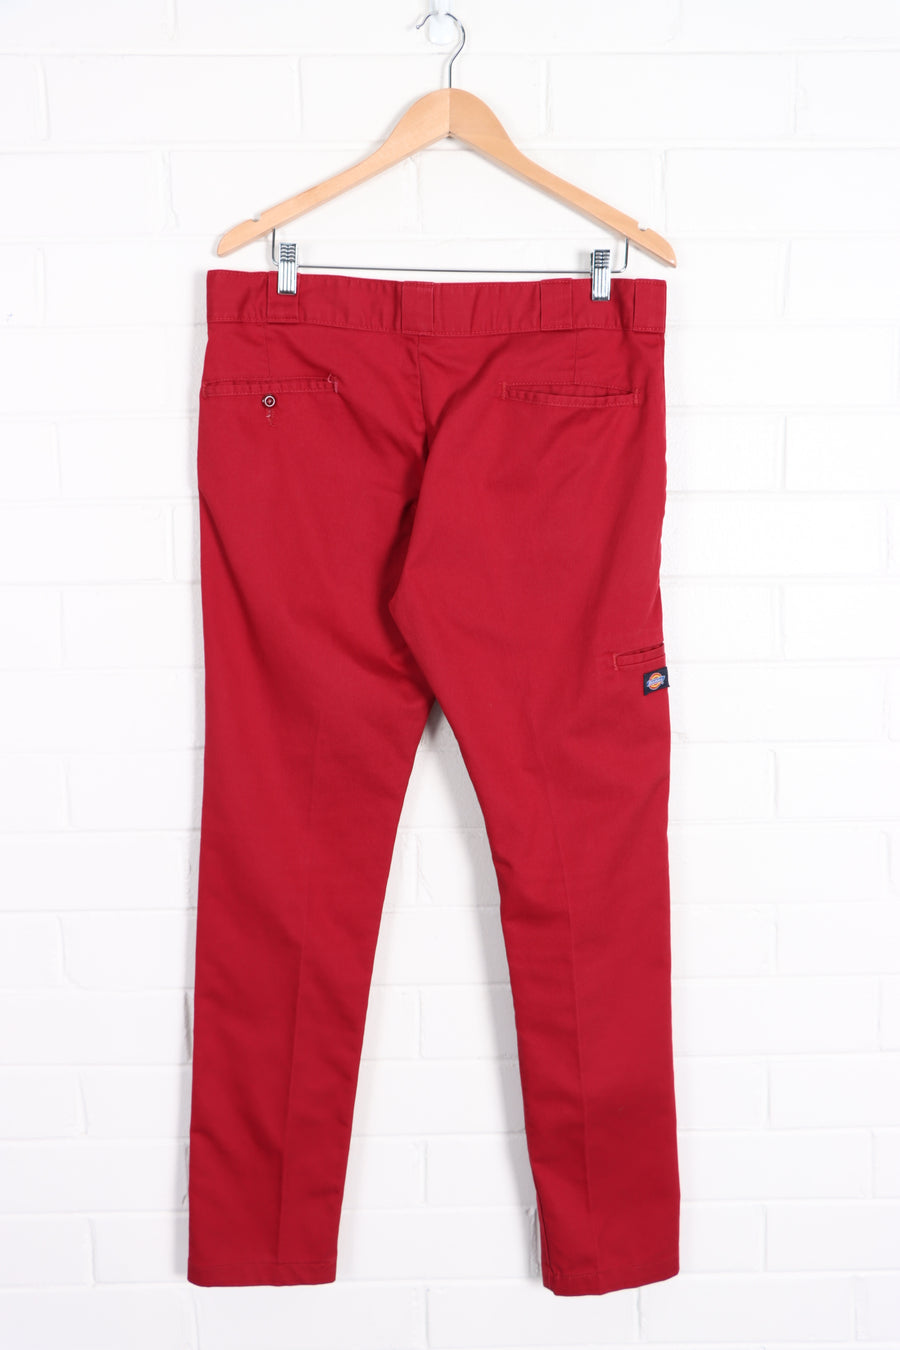 DICKIES Vintage 'Skinny Straight' Red Workwear Pants (34x32) - Vintage Sole Melbourne